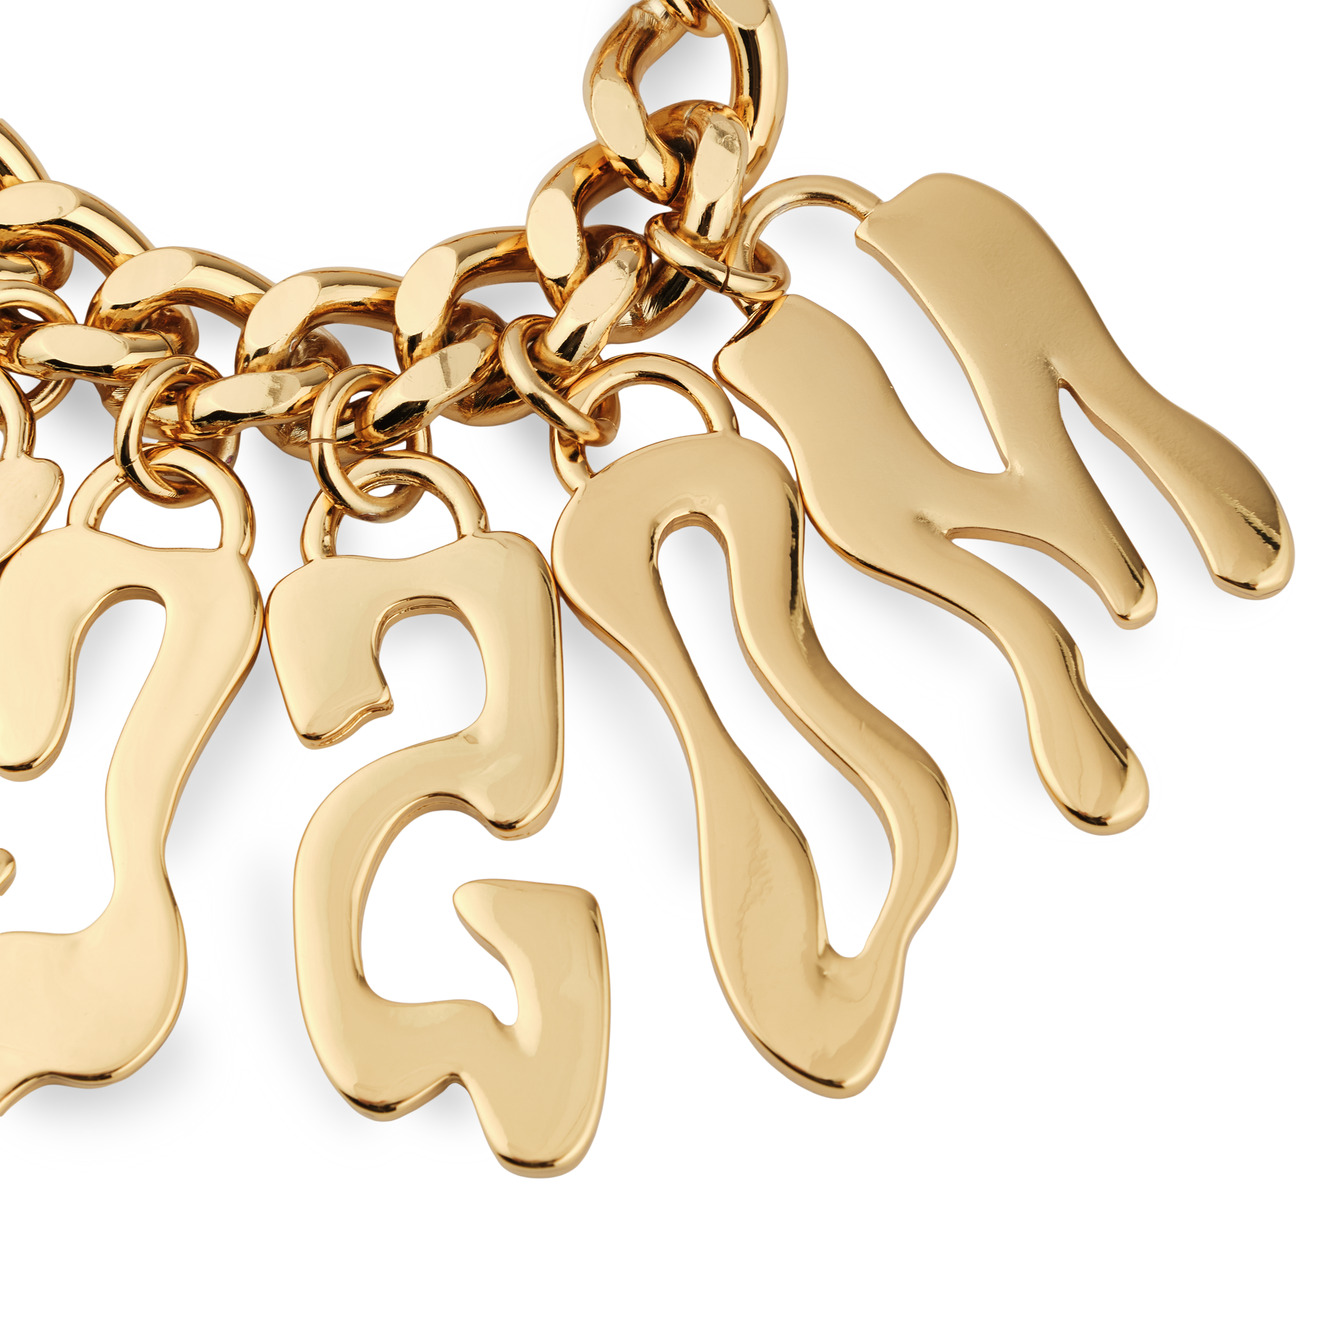 Moschino Золотистый браслет-цепь с расплывчатыми буквами moschino золотистый брелок в виде сумки